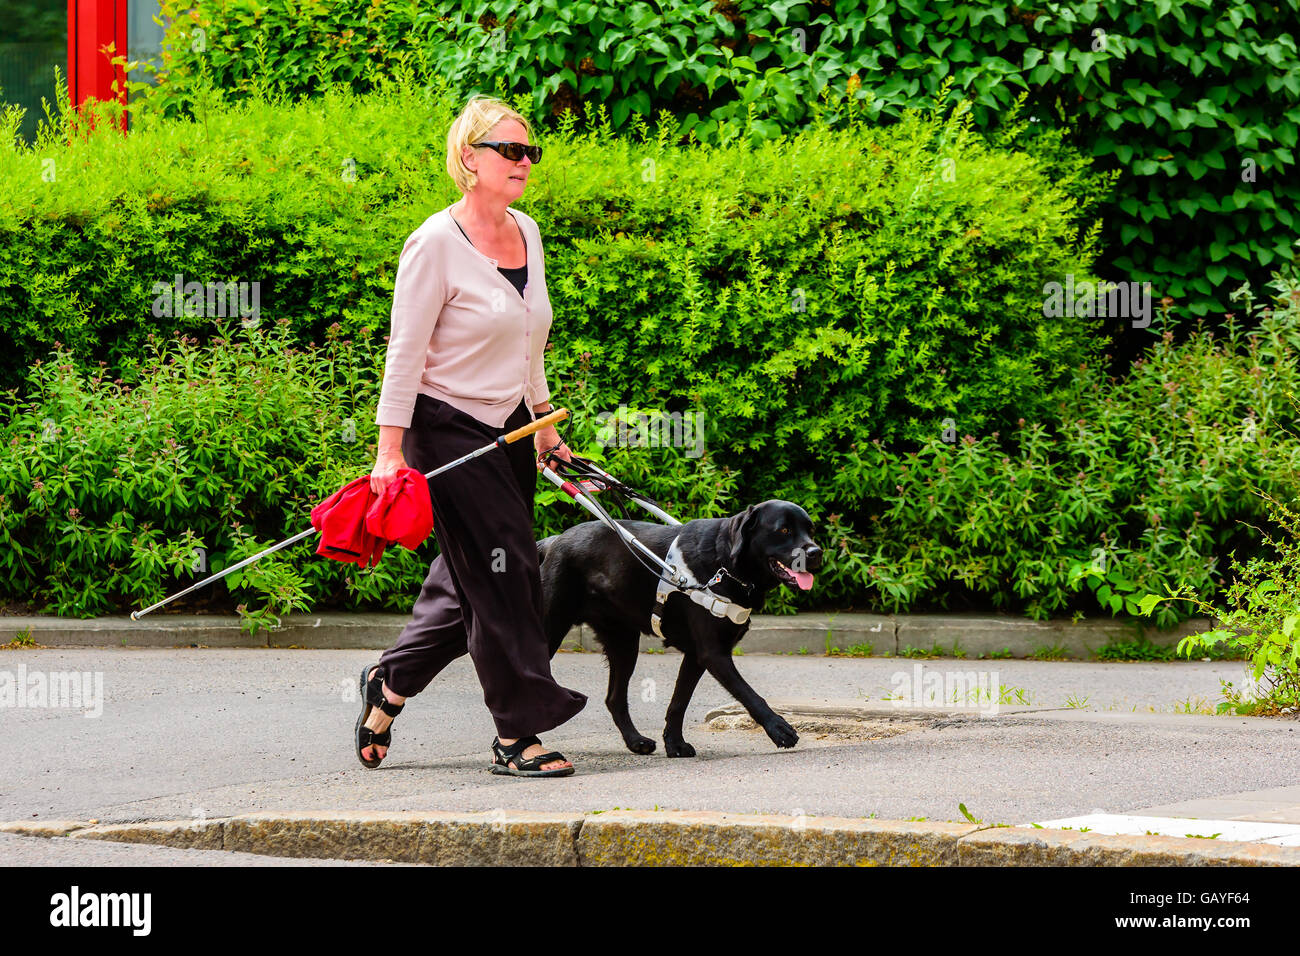 Motala, Schweden - 21. Juni 2016: Blinde oder Sehbehinderte Frau, für einen Spaziergang durch ihr Blindenhund geholfen. Weißer Stock in der Hand Stockfoto